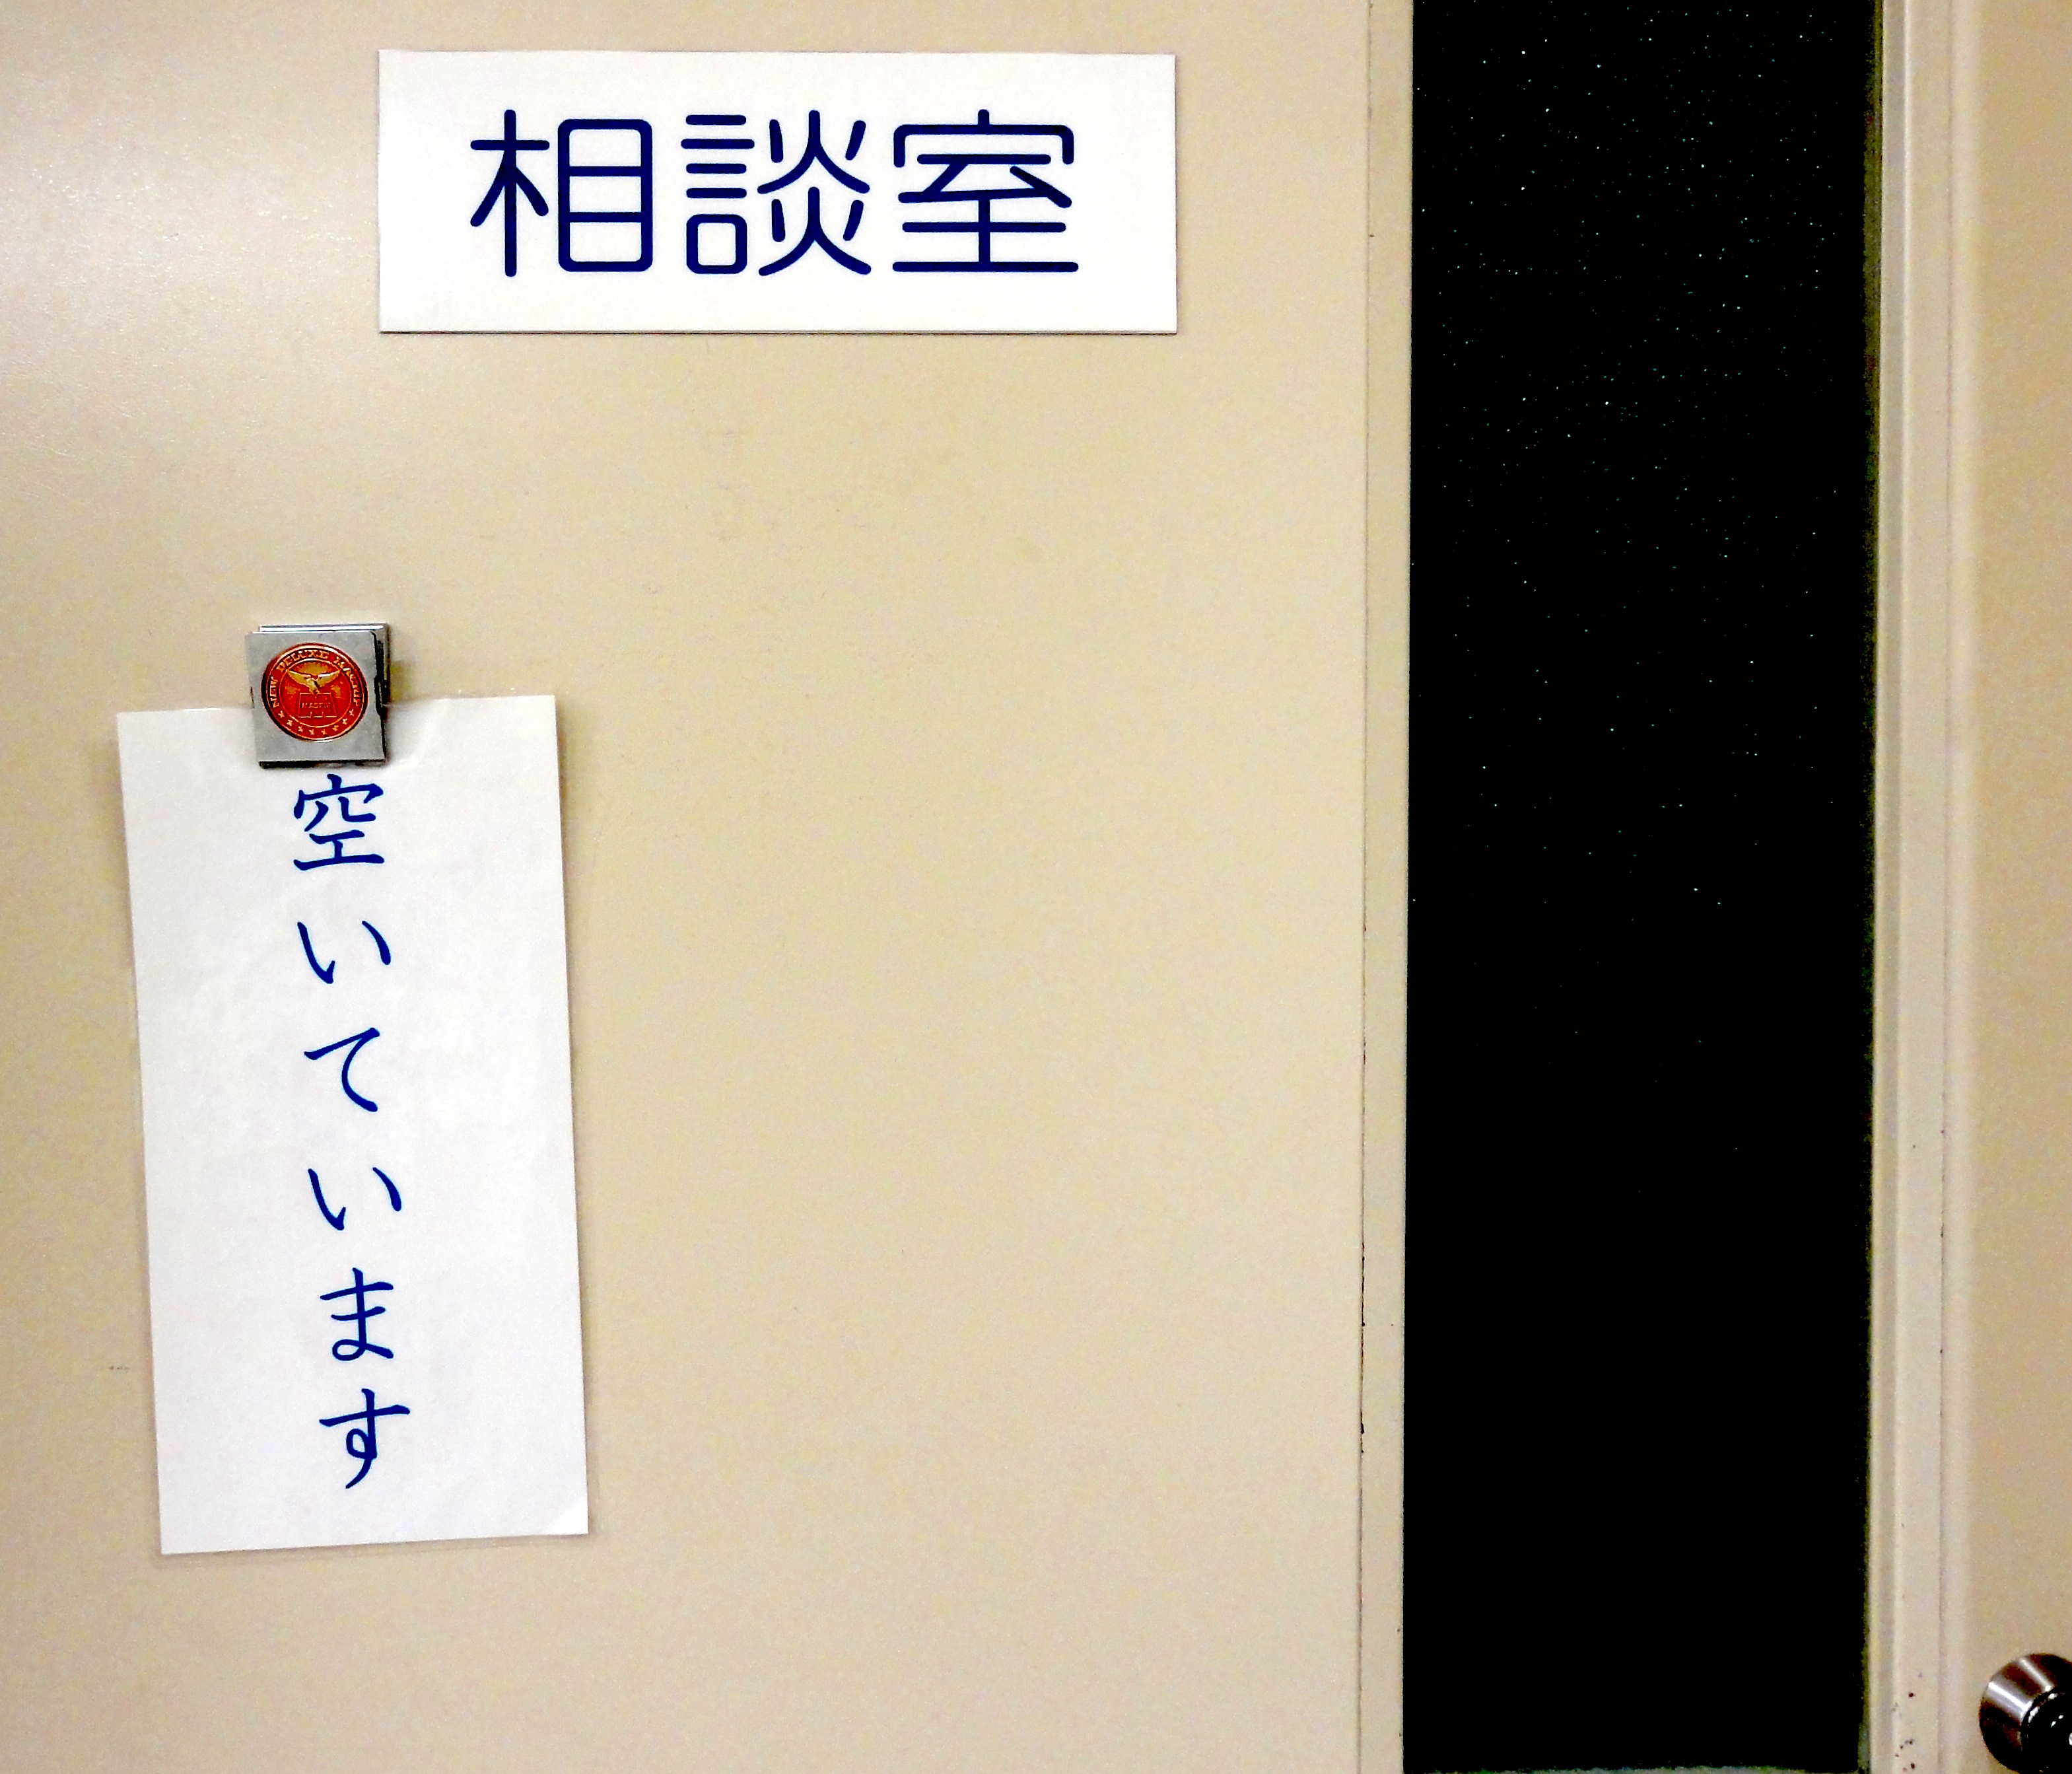 learn-kanji-Japanese-sign-consultation-room